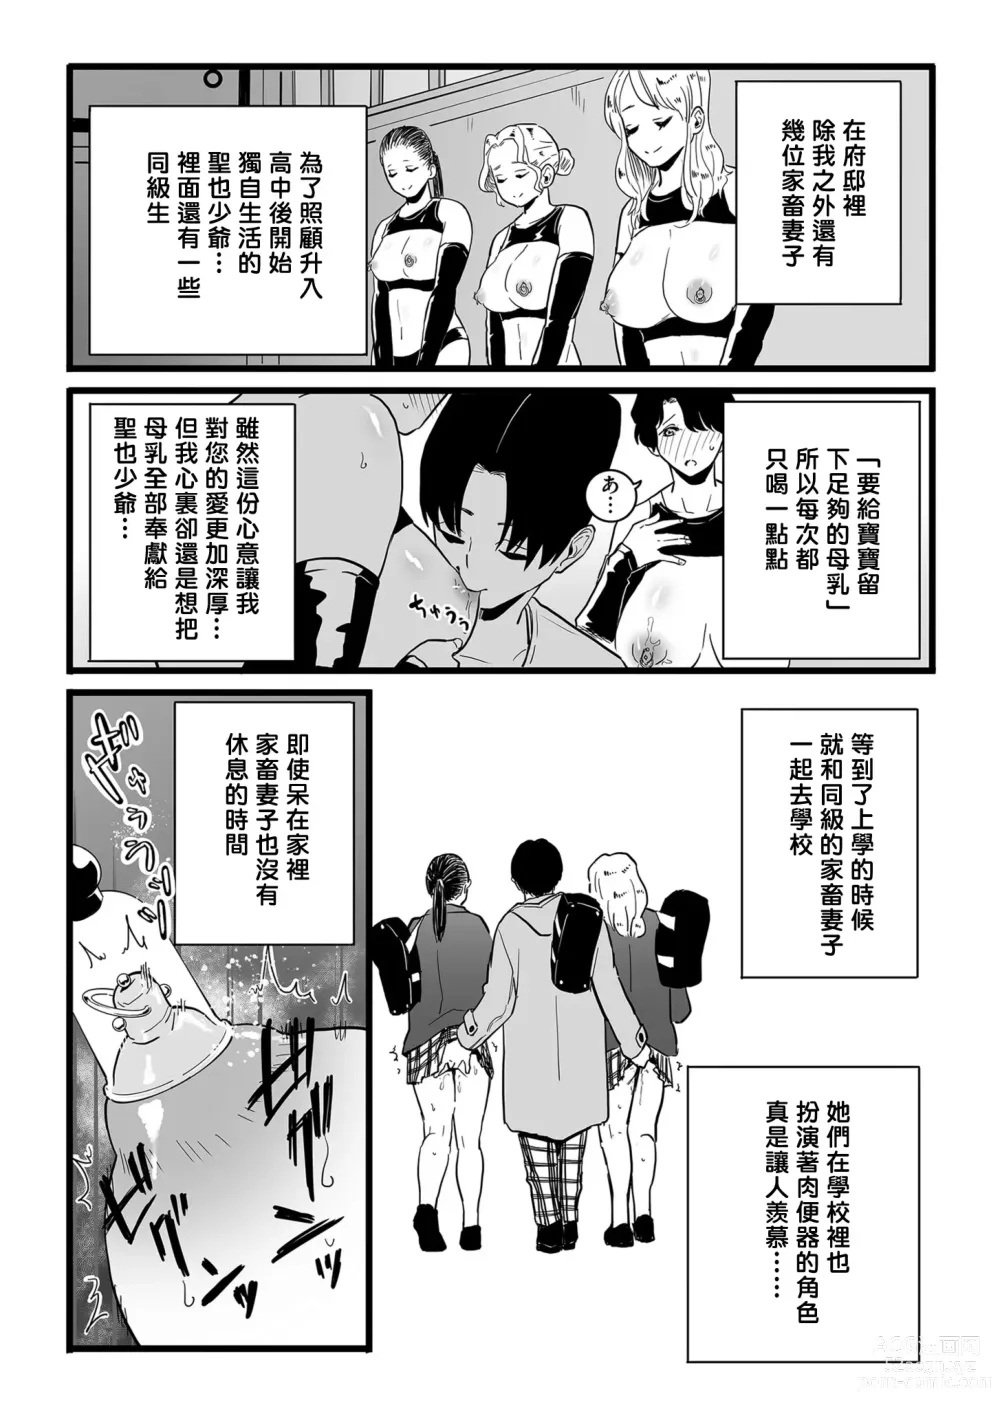 Page 5 of manga Mesu Dorei Sengen denshi tokusou ban egaki oroshi manga